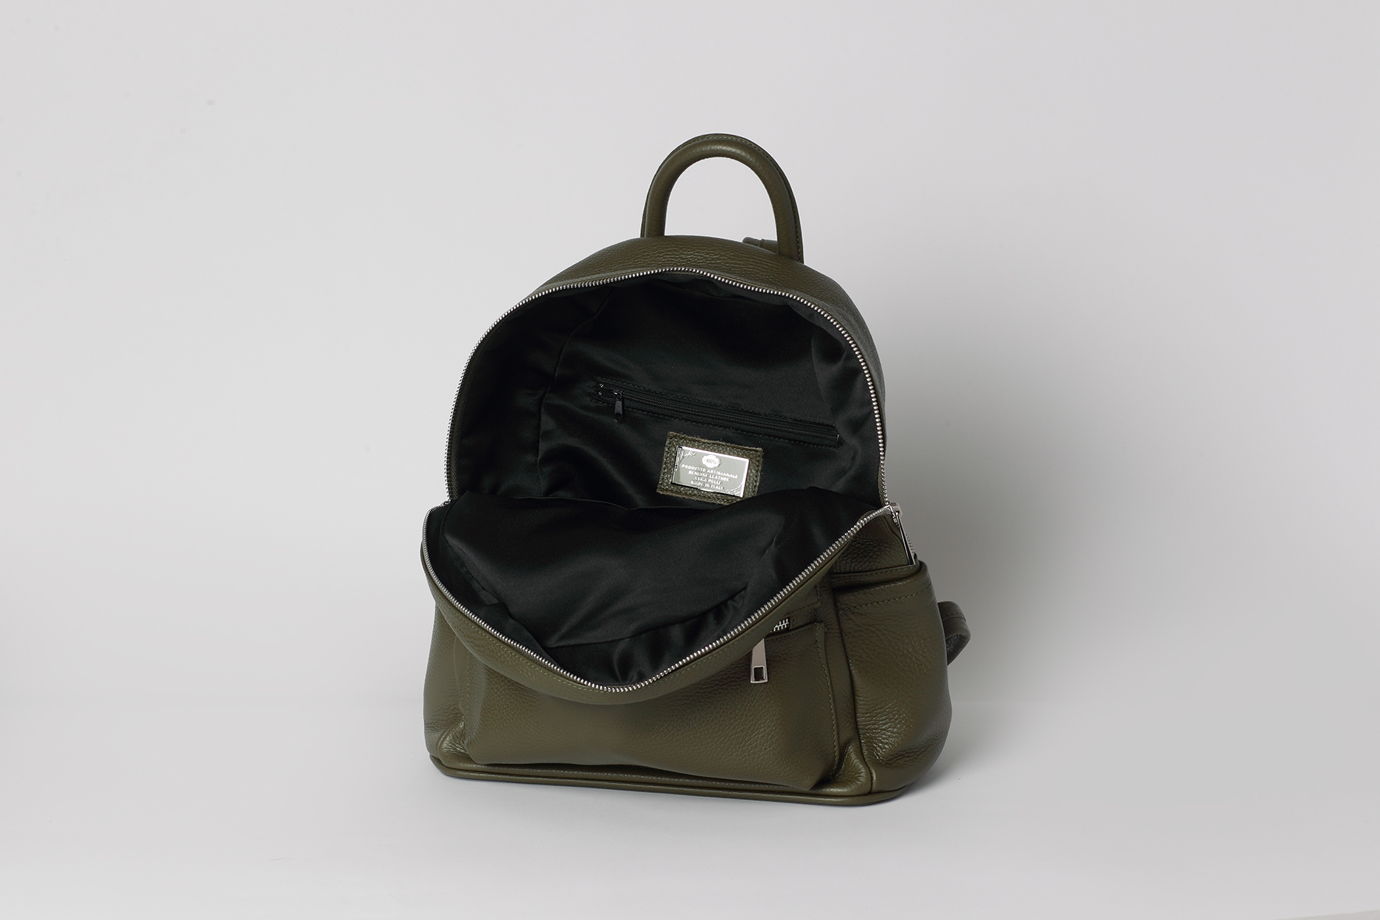 Кожаный рюкзак SASHA оливкового оттенка. В наличии в Москве